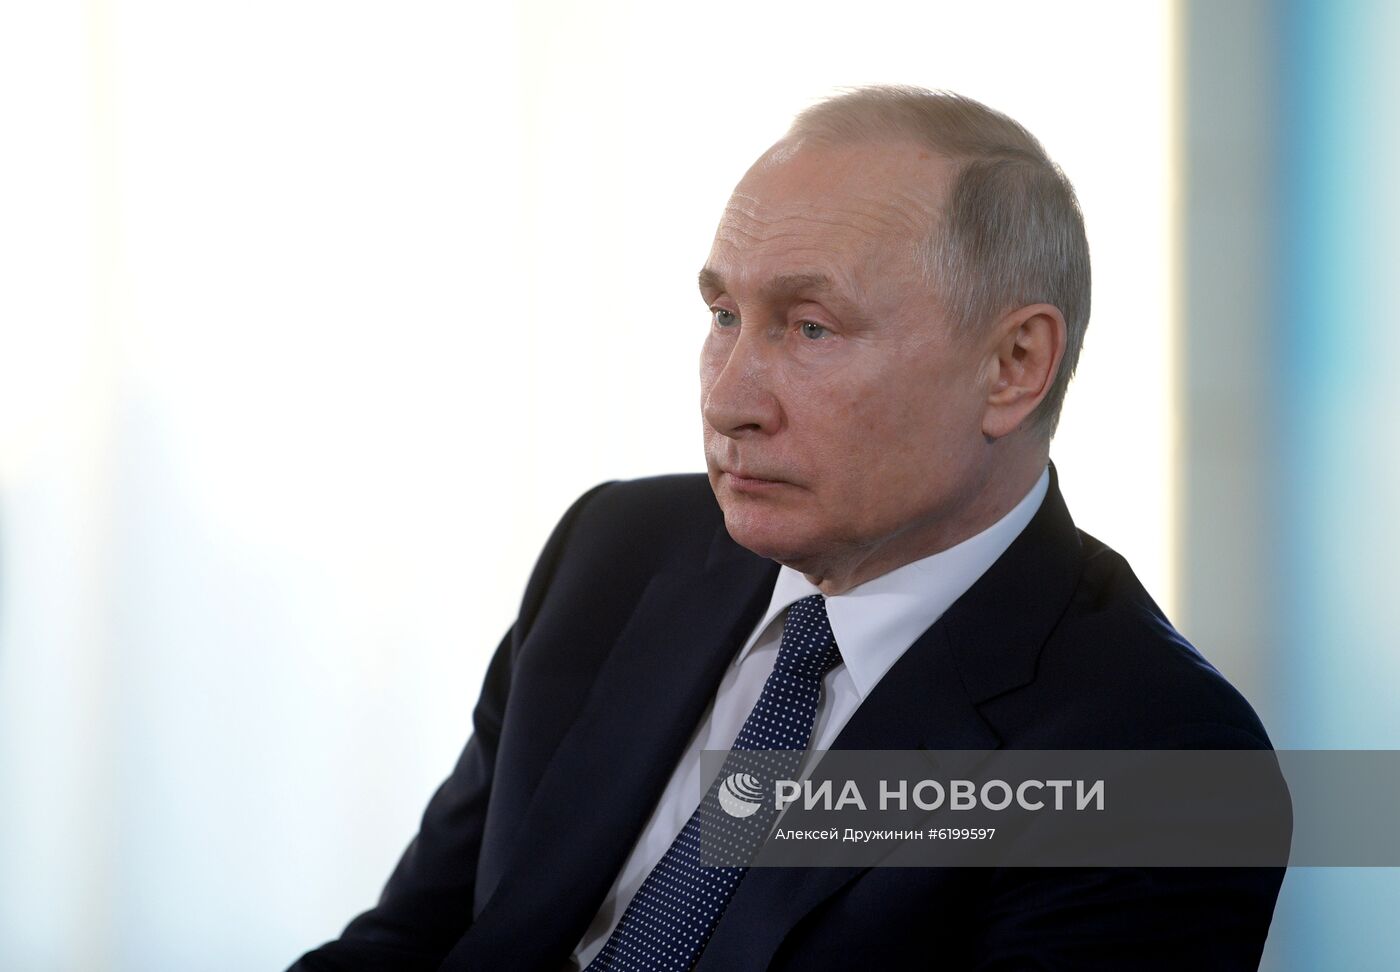 Рабочая поездка президента В. Путина в Крым